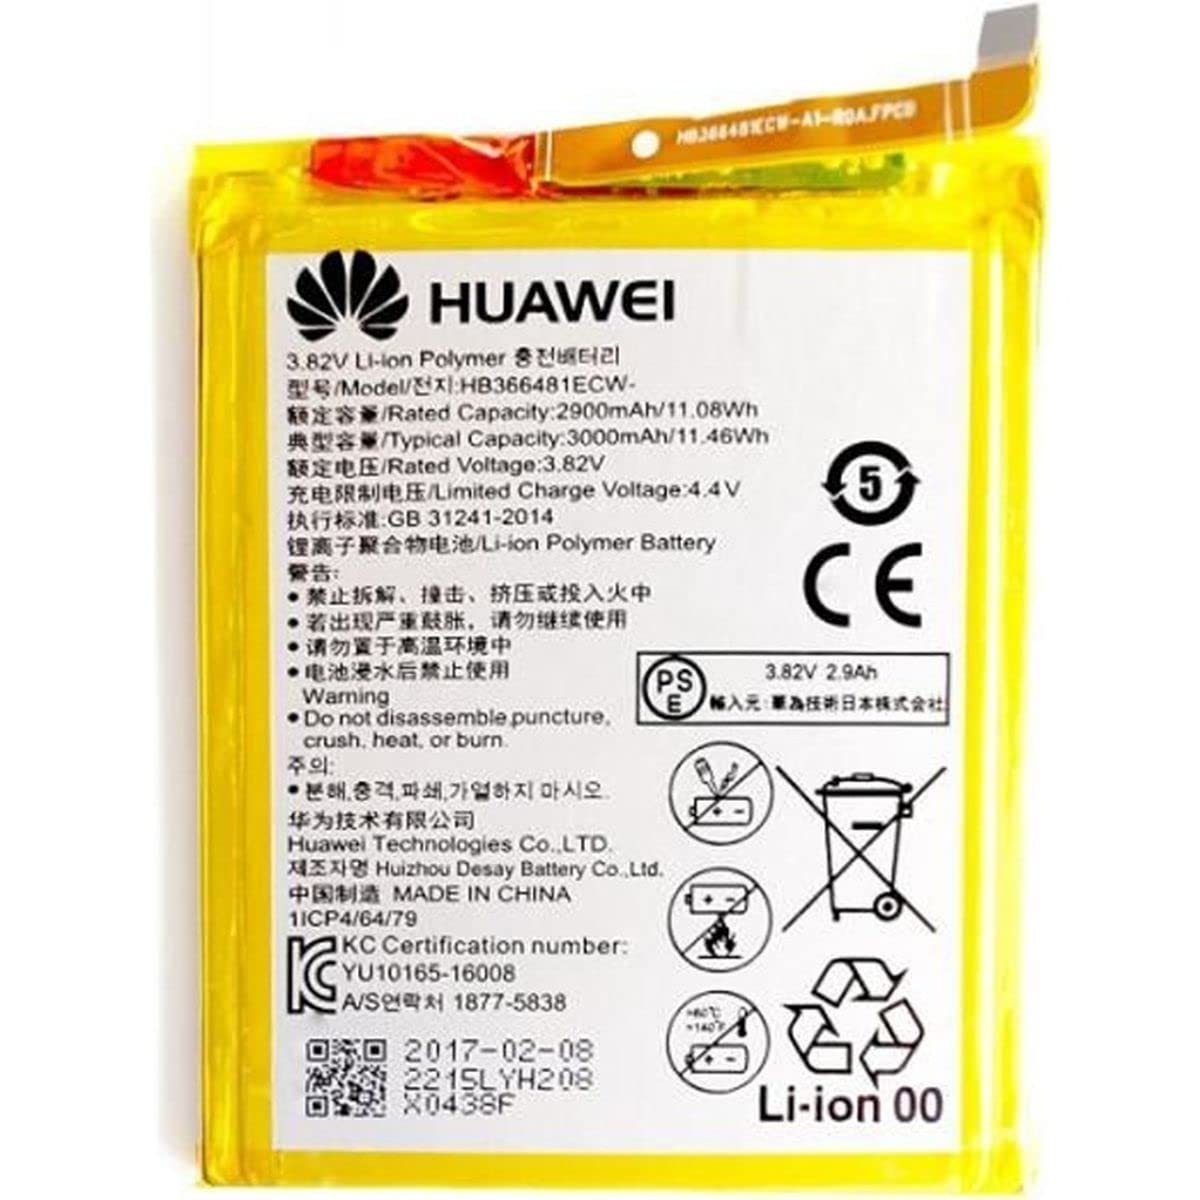 Batterie/Batterie Original Huawei P9 hb366481ecw eva-l09 2900 mAh OEM 1er bulk